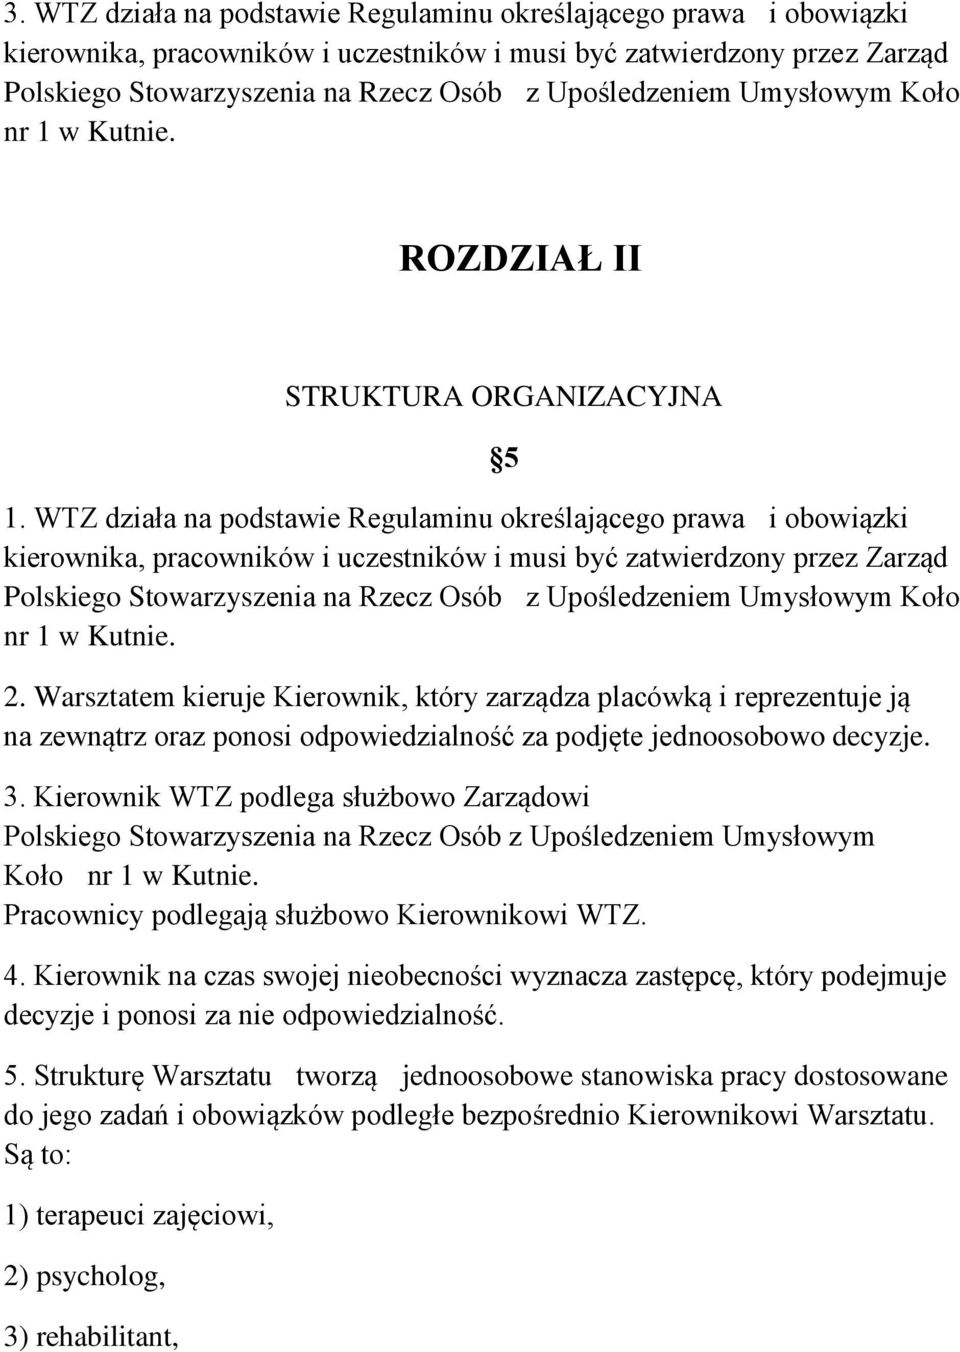 WTZ działa na podstawie Regulaminu określającego prawa i obowiązki kierownika, pracowników i uczestników i musi być zatwierdzony przez Zarząd Polskiego Stowarzyszenia na Rzecz Osób z Upośledzeniem